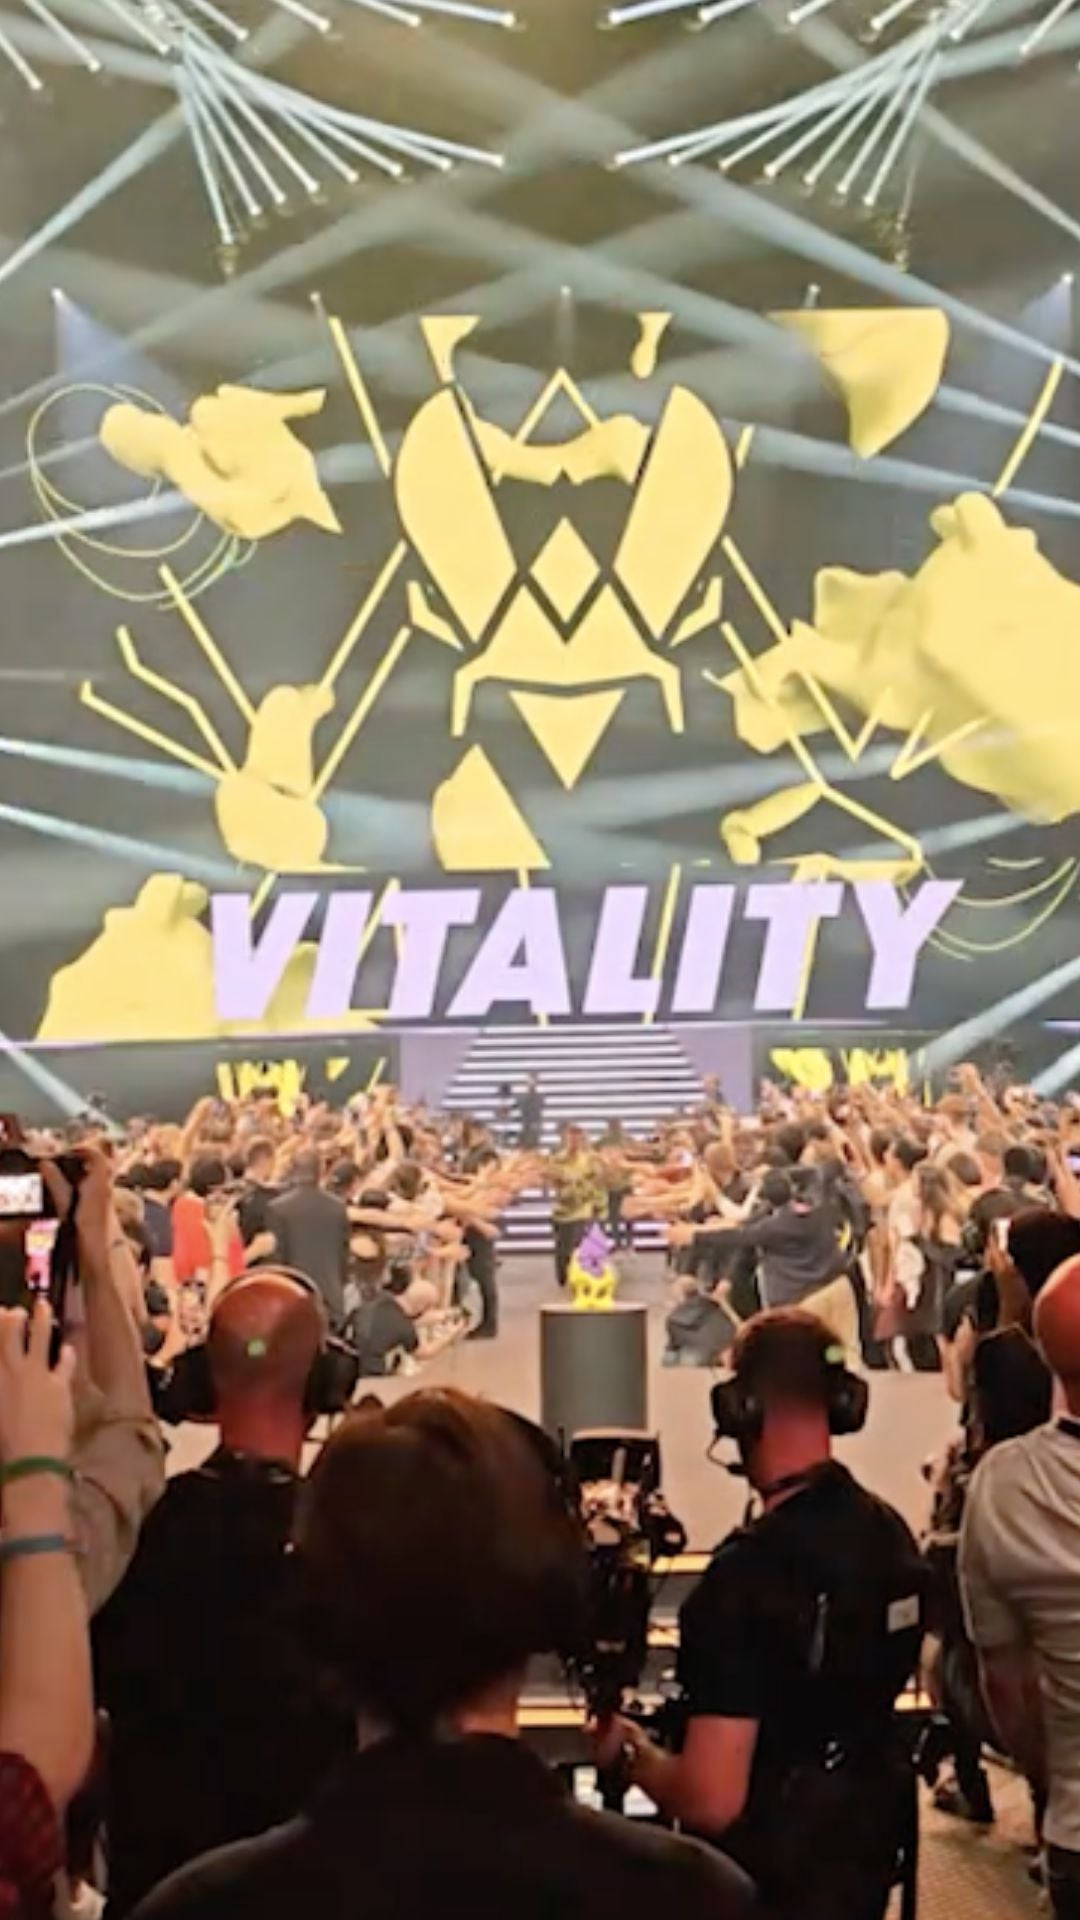 L’équipe française Vitality est sacrée championne de Counter-Strike